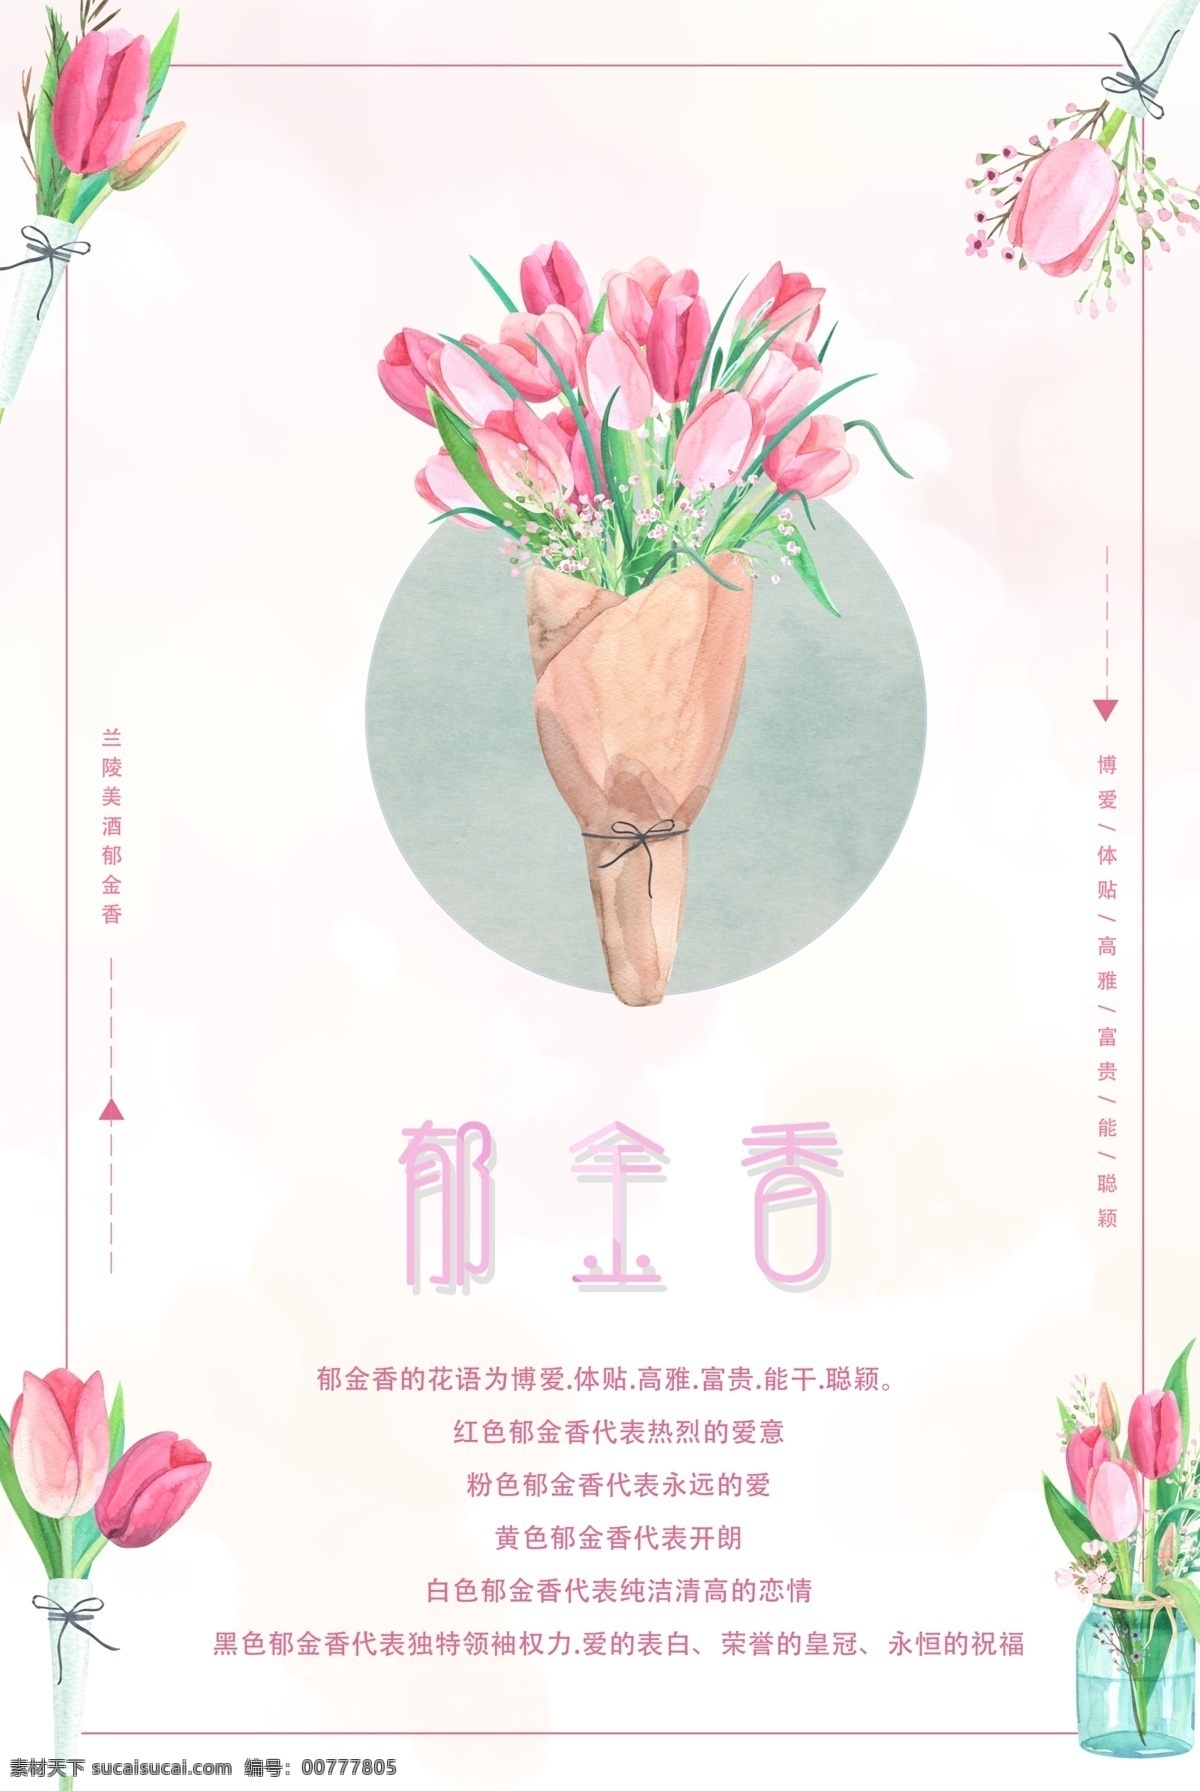 郁金香 花卉 海报 植物海报 清新 自然 华语 粉色系